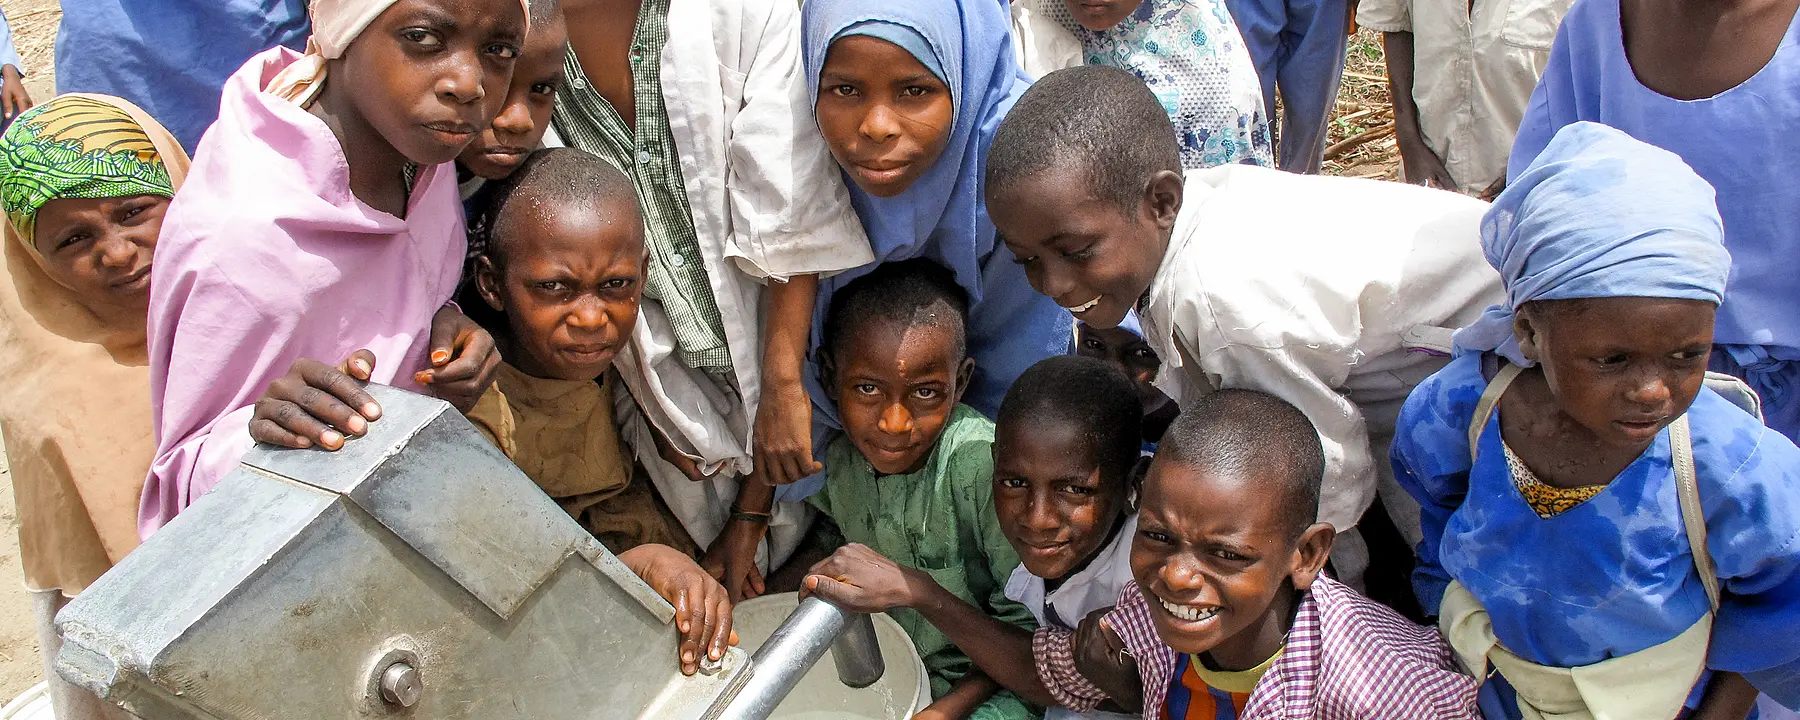 Children gather around new water borehole in Nigeria